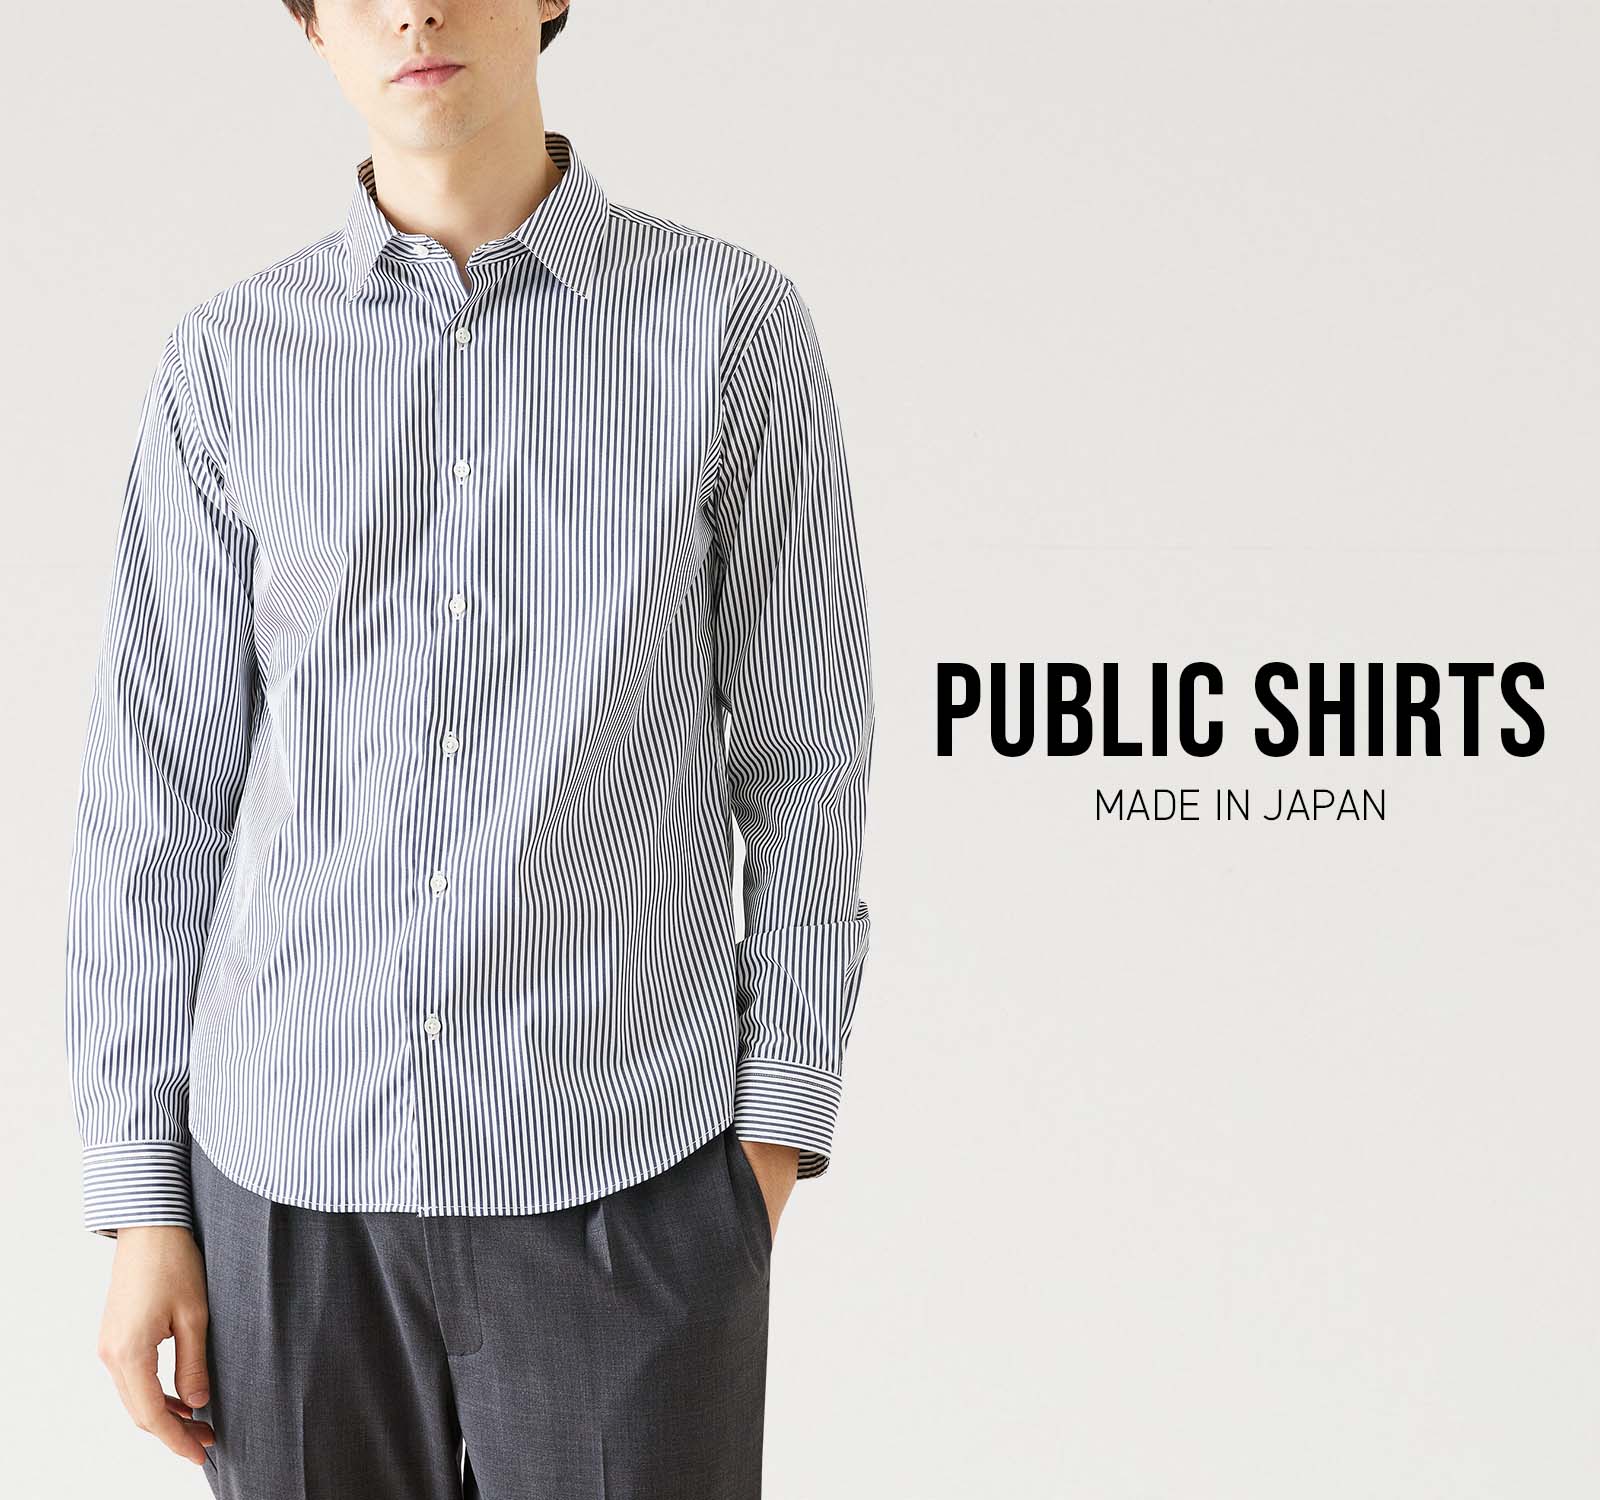 PUBLIC TOKYO カジュアルシャツ 1(S位) グレーなし光沢